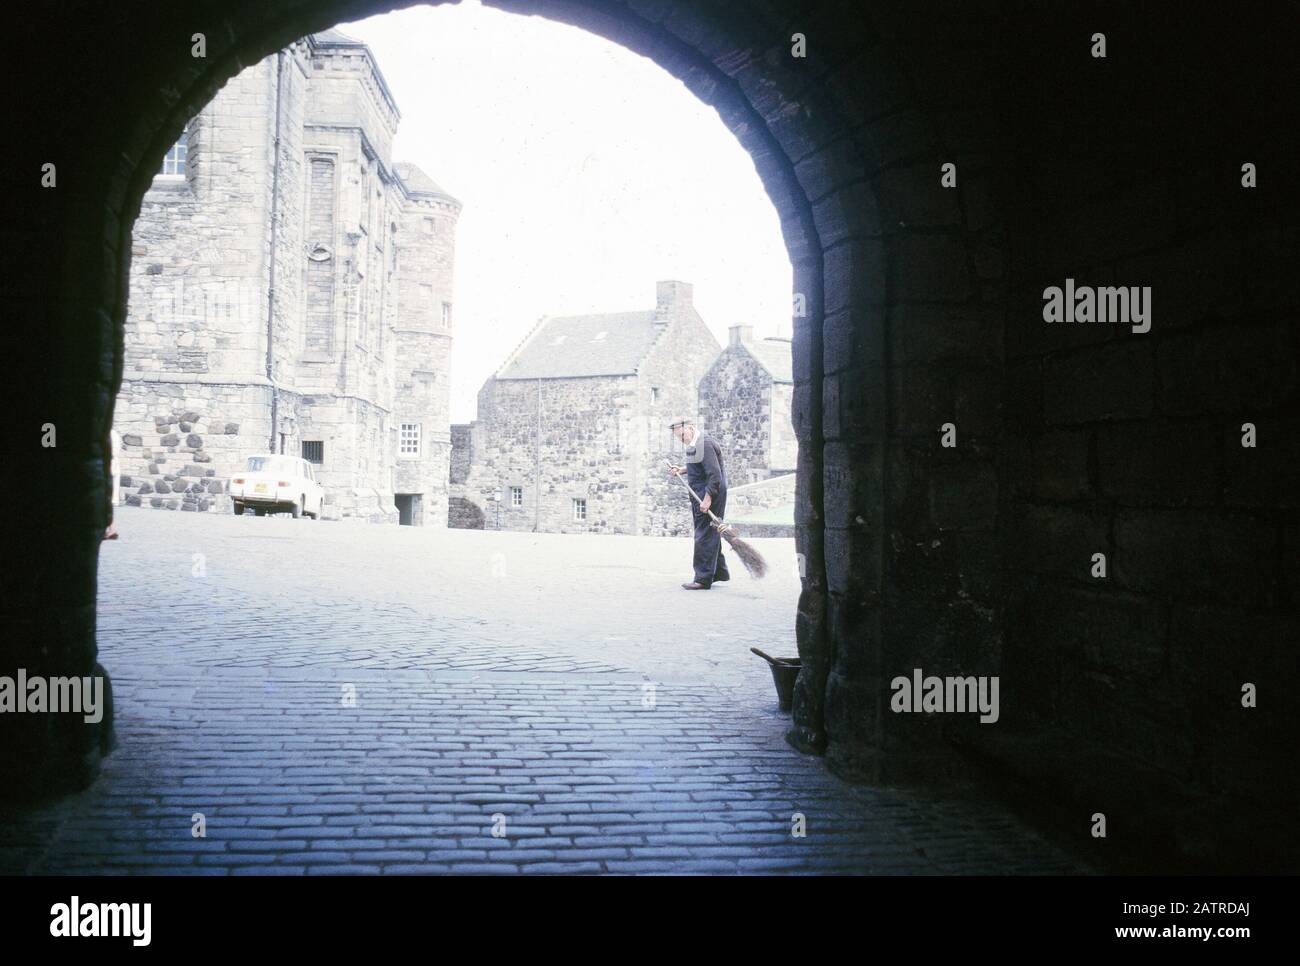 Photo vernaculaire prise sur un film analogique de 35 mm transparent, qui est censé représenter l'homme dans une veste noire marchant sur le trottoir pendant la journée, vu par une arche en silhouette, 1970. Les principaux sujets/objets détectés sont l'hiver, la lumière, la neige et l'ombre. () Banque D'Images